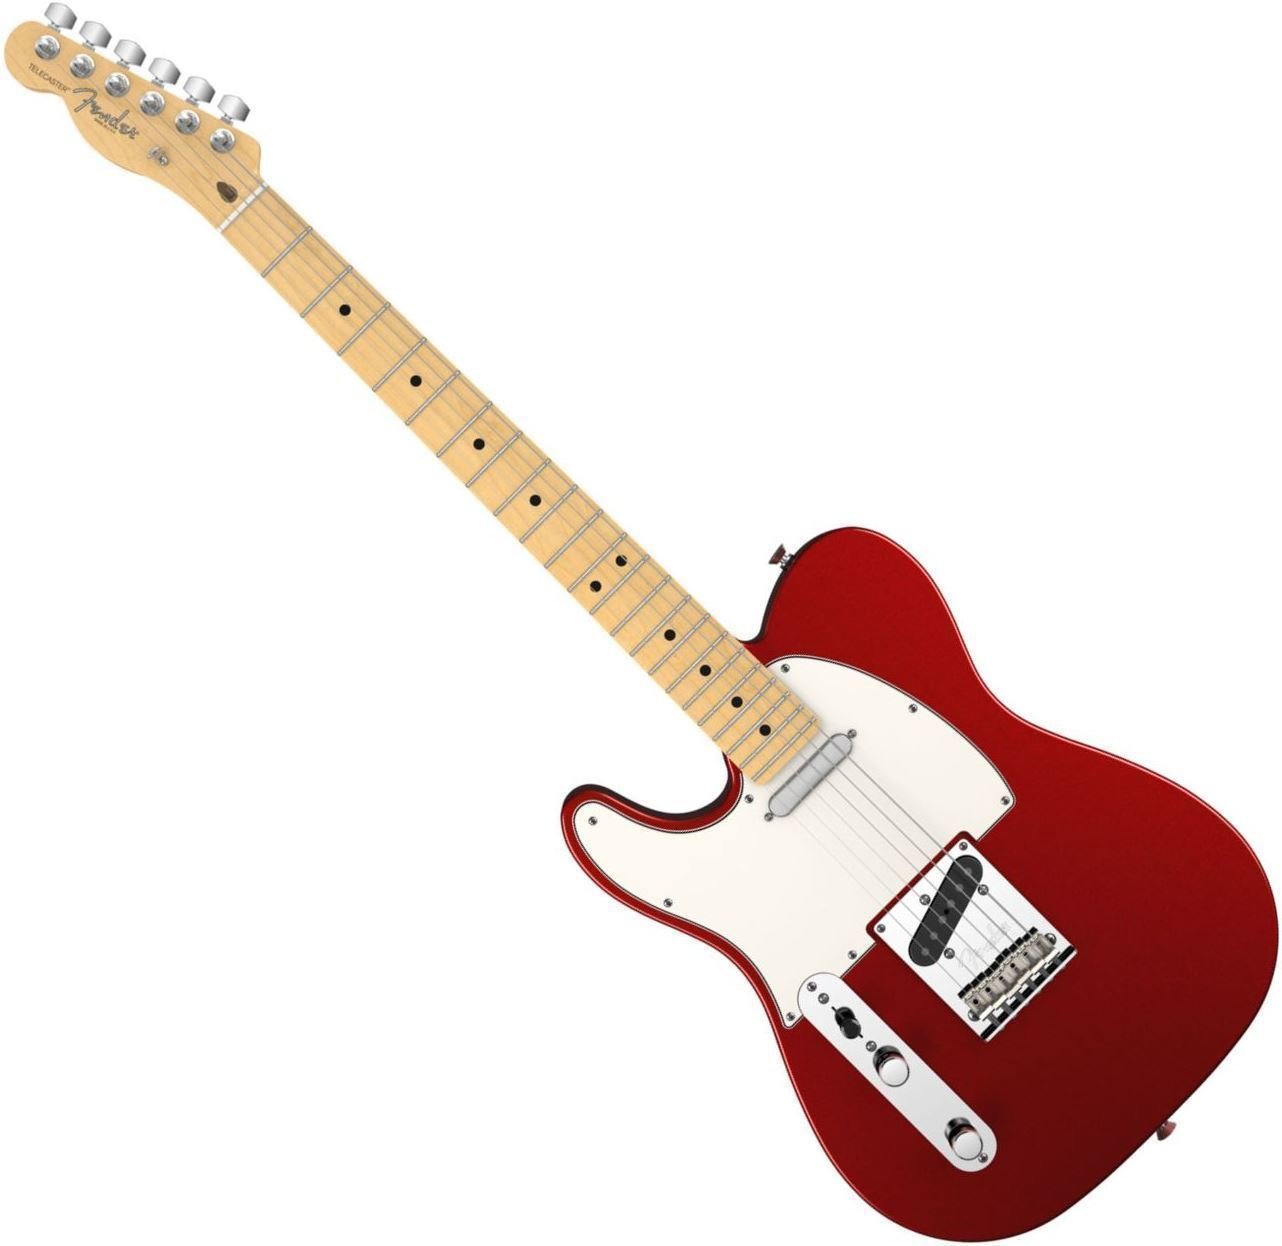 Ηλεκτρική Κιθάρα για Αριστερόχειρες Fender American Standard Telecaster, Left Handed, Maple Fingerboard, Mystic Red